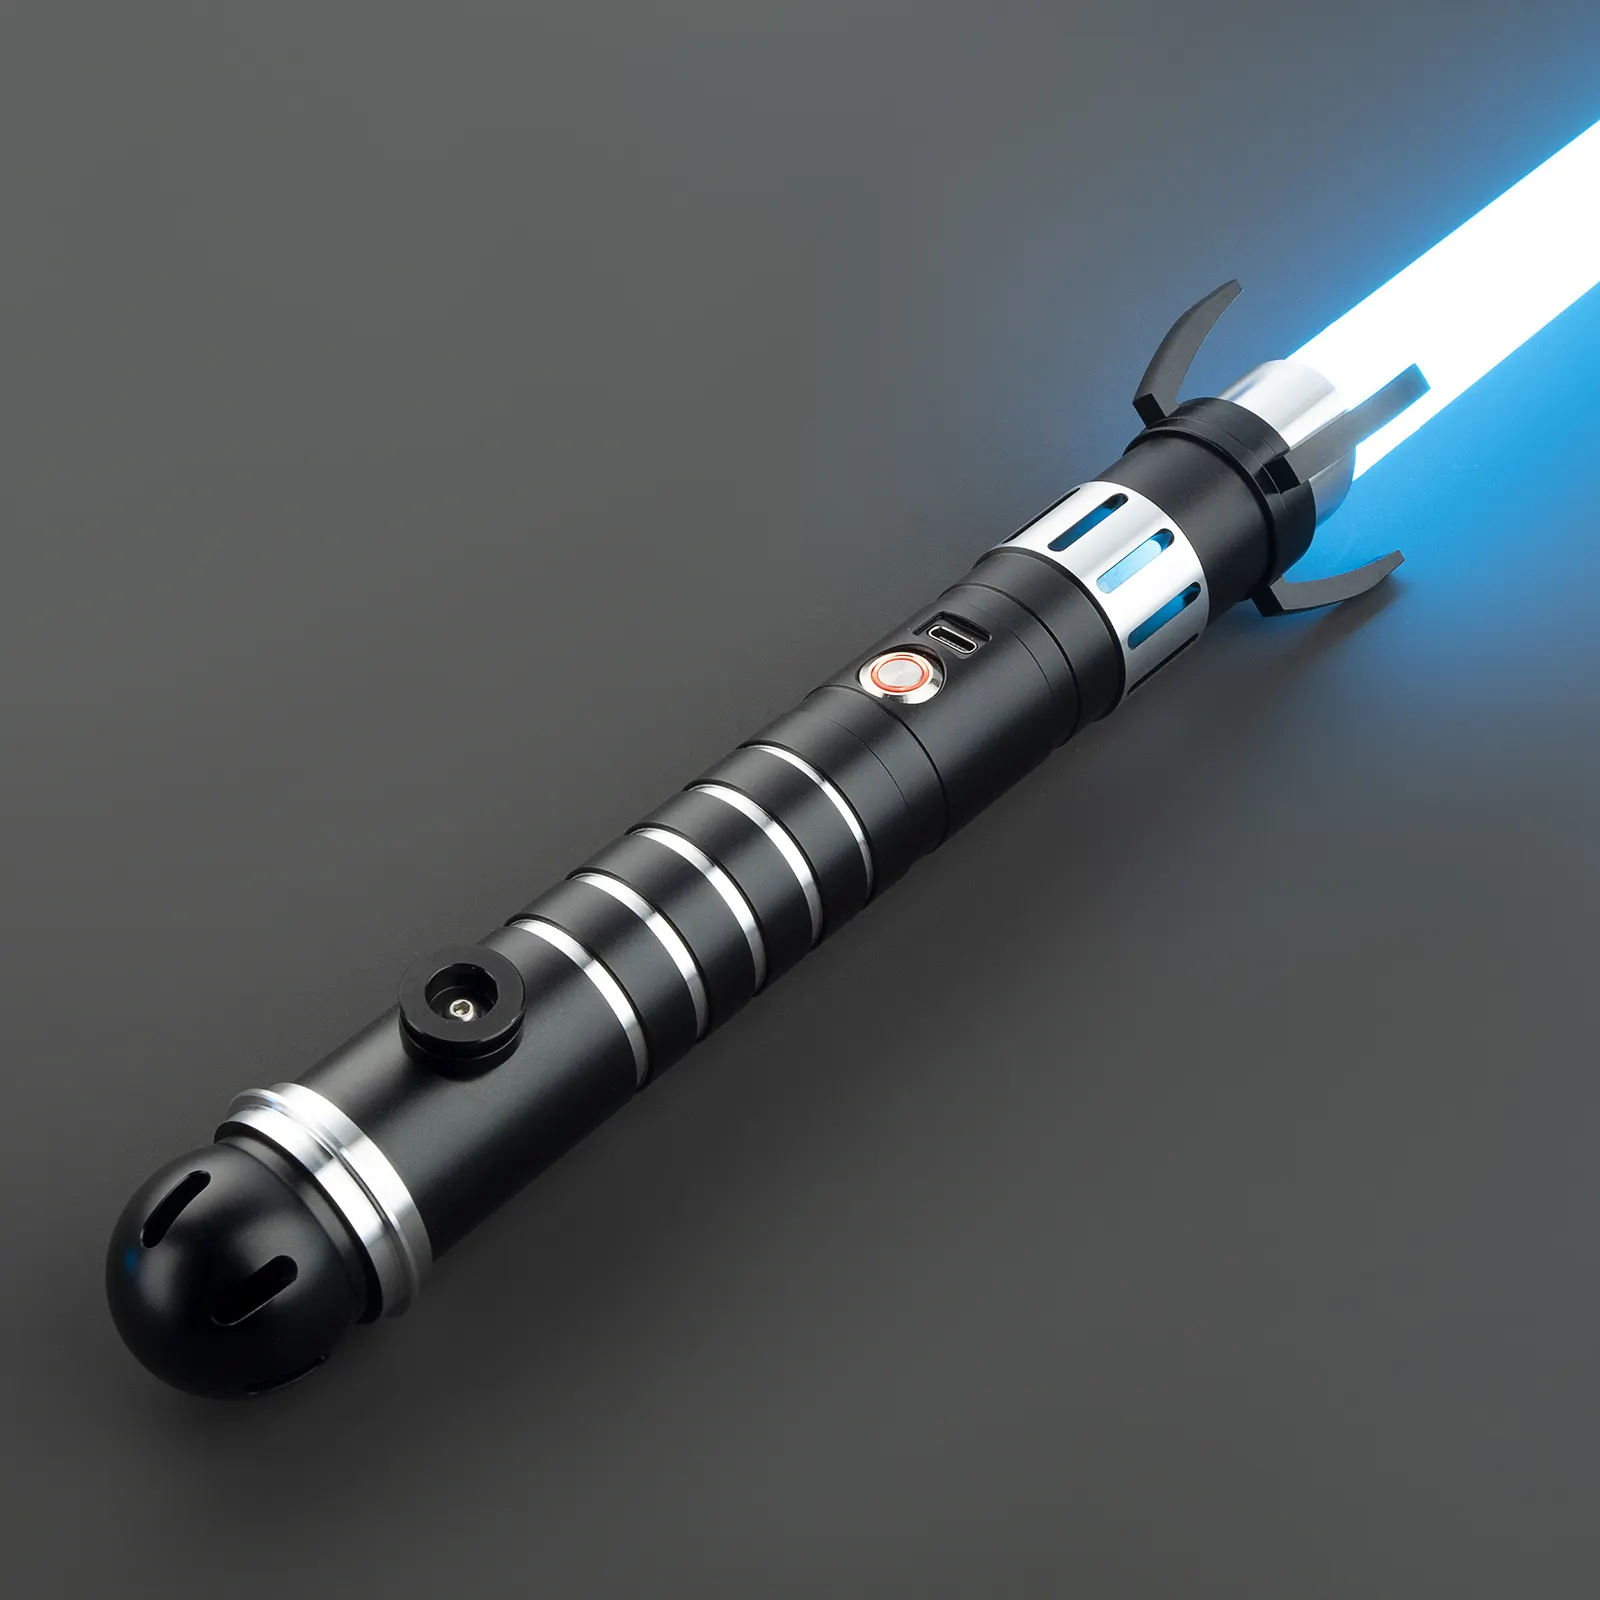 LGT SABERSTUDIO Lightsaber Laser Dueling Sword RGB Color Changing with 9 Soundfonts Force Blaster Flash on Clash Light up Toy